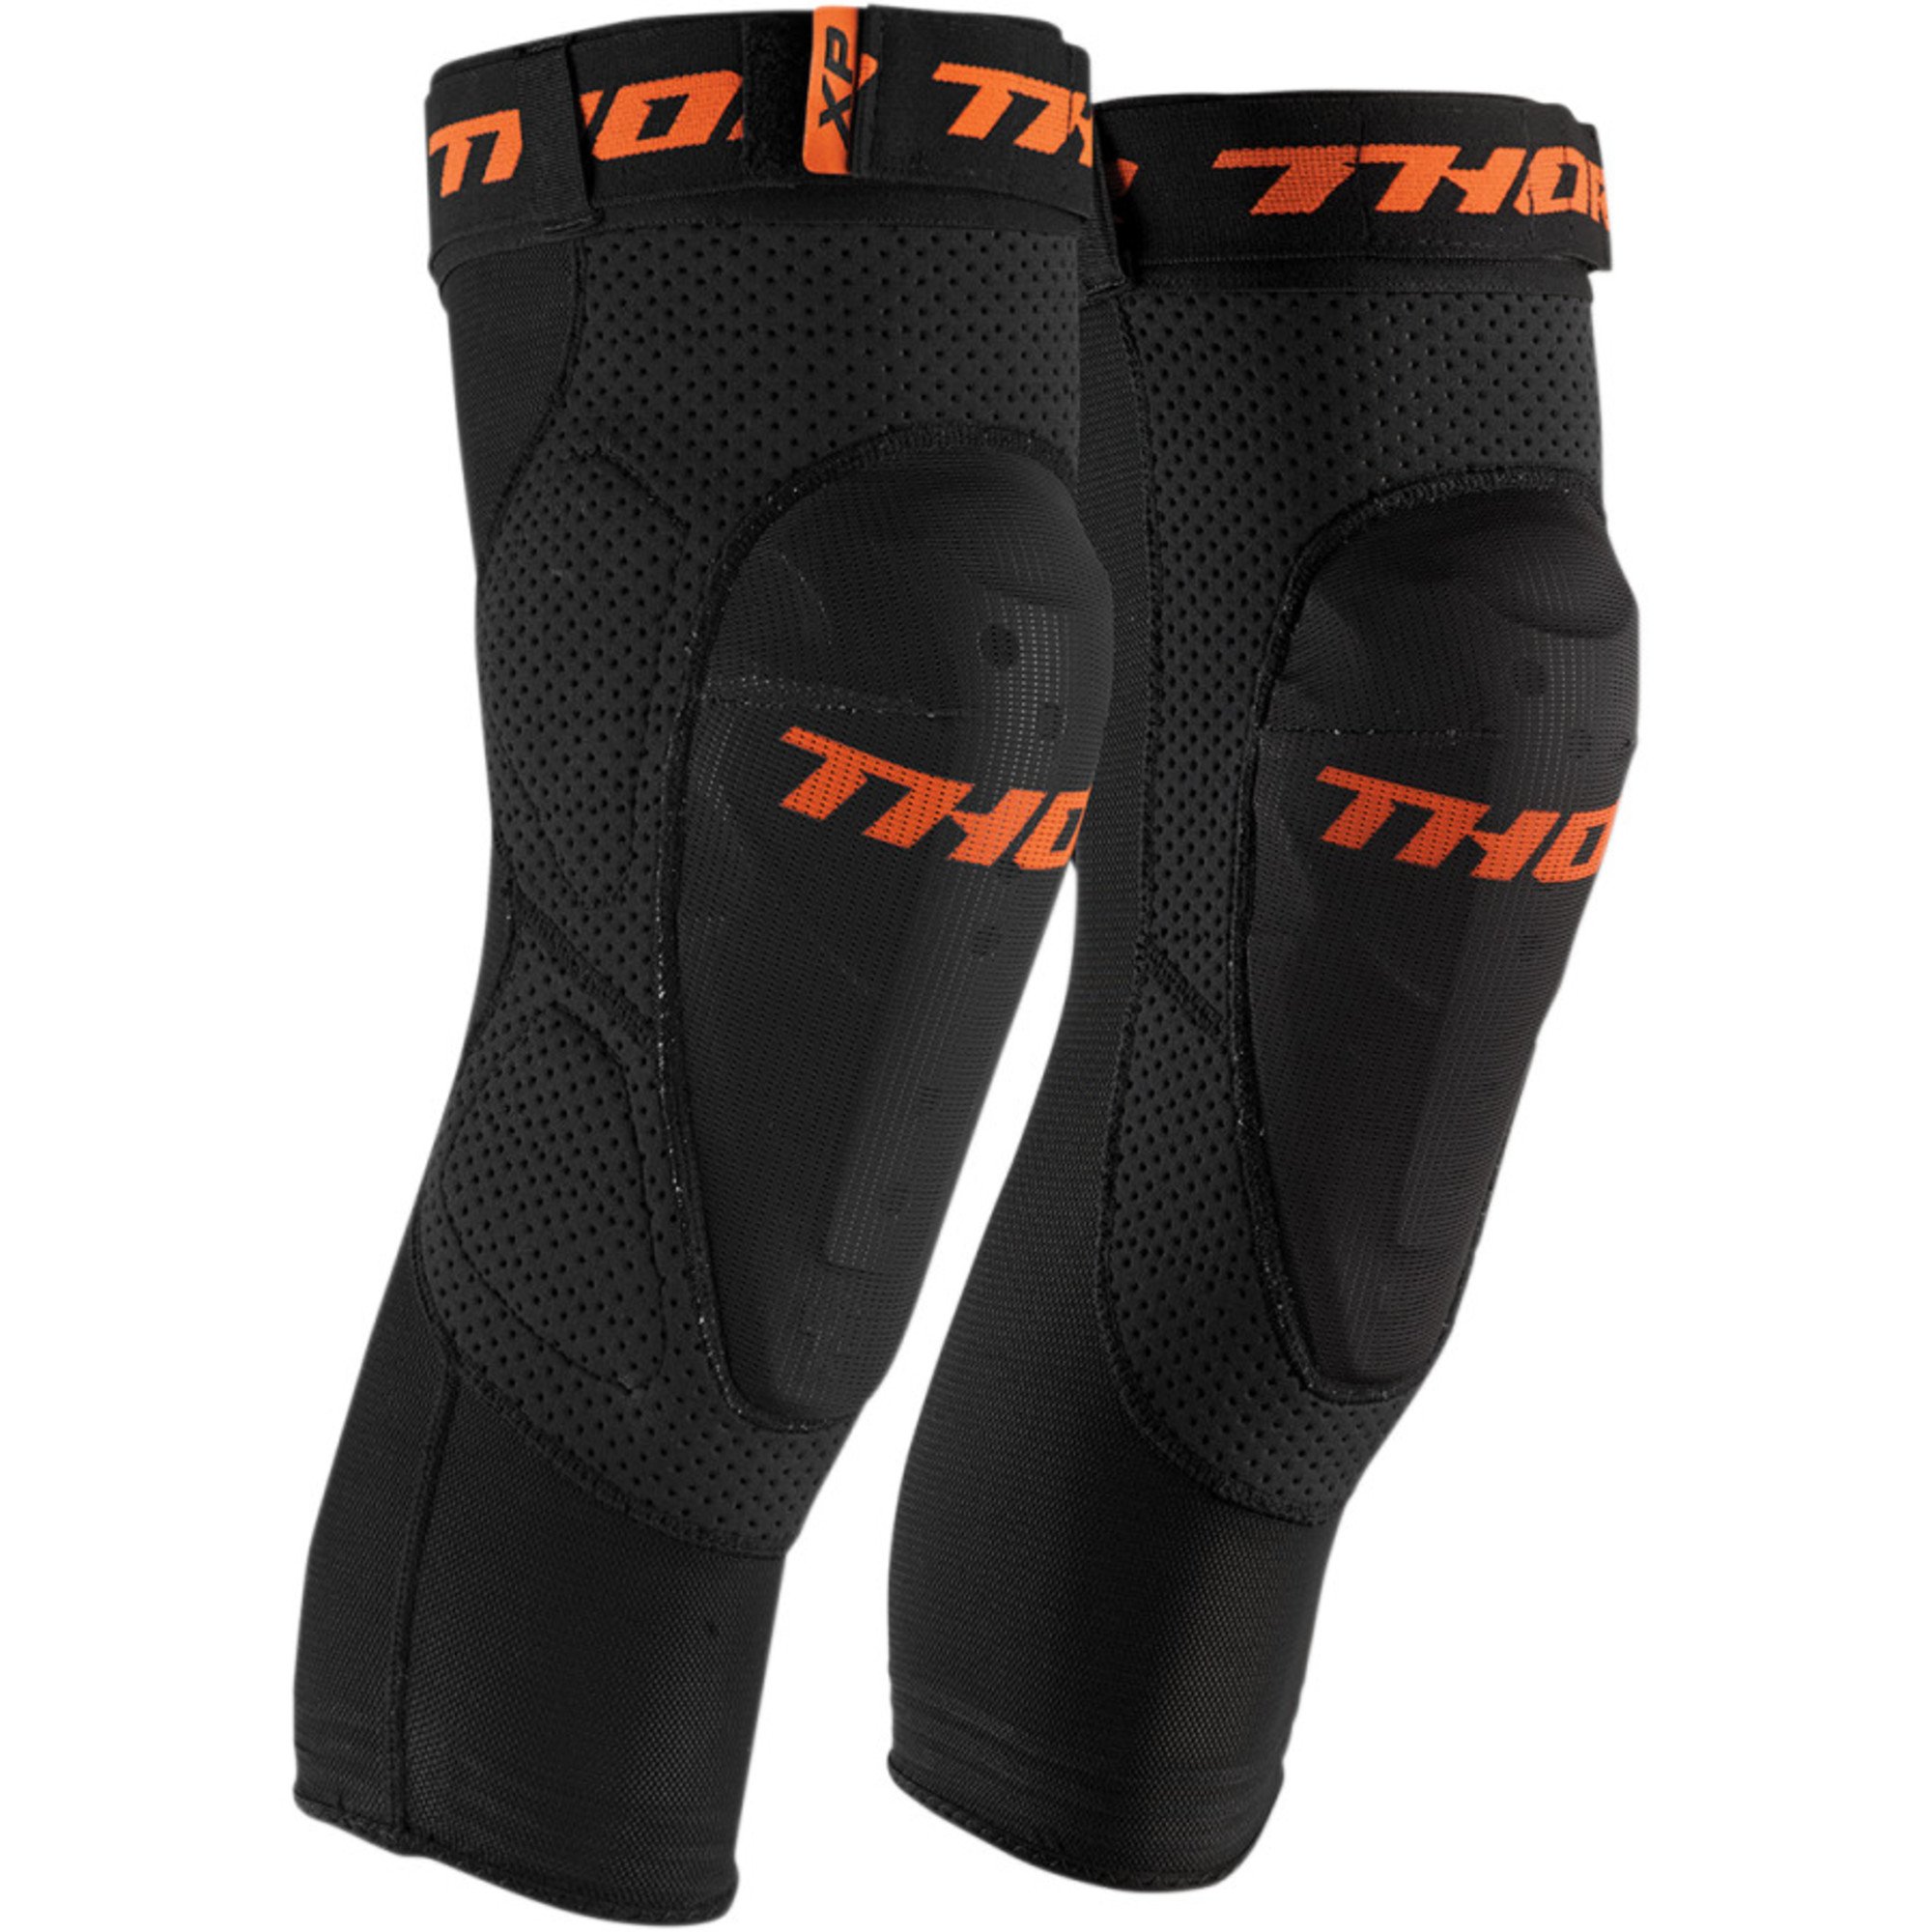 motocross protections protège-genoux & tibias par thor adult comp xp